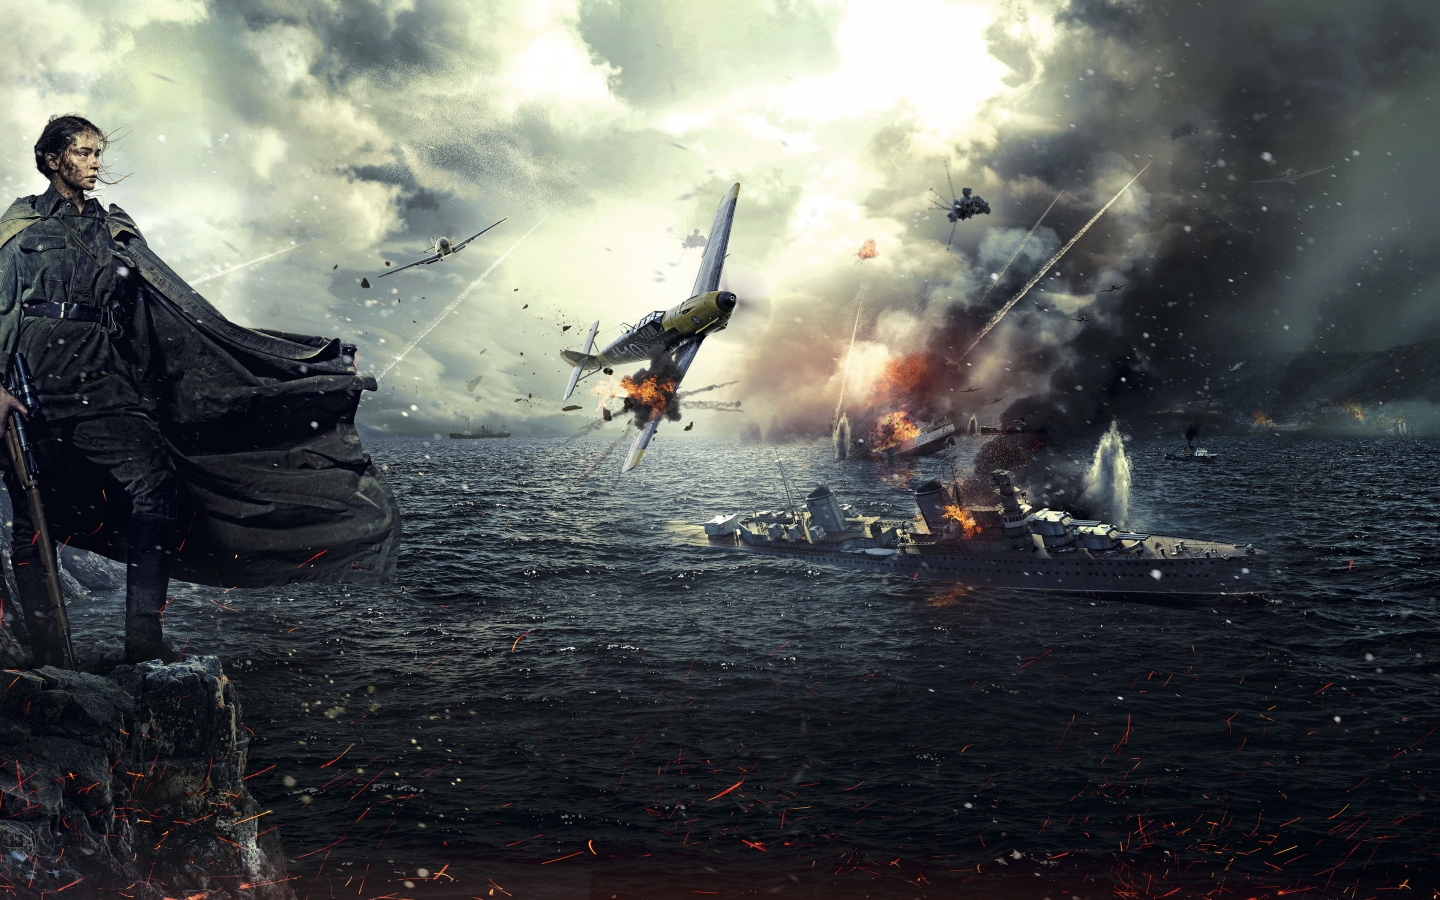 Battle for Sevastopol 2015 for 1440 x 900 widescreen resolution